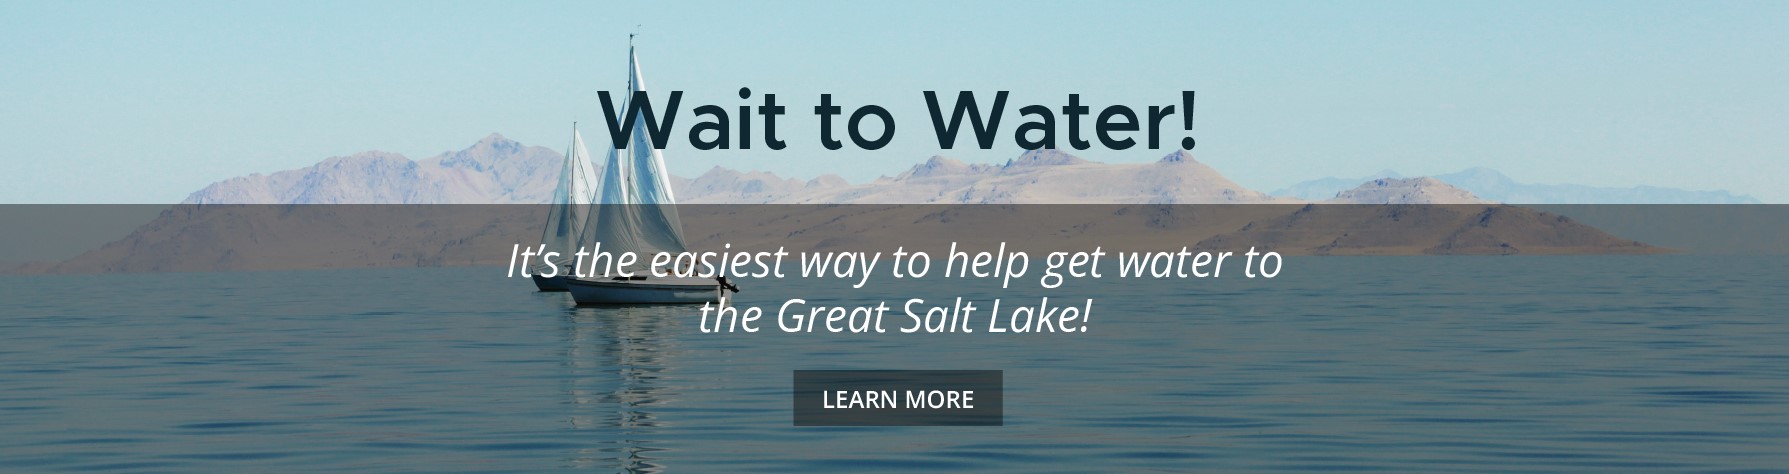 Wait to Water Great Salt Lake